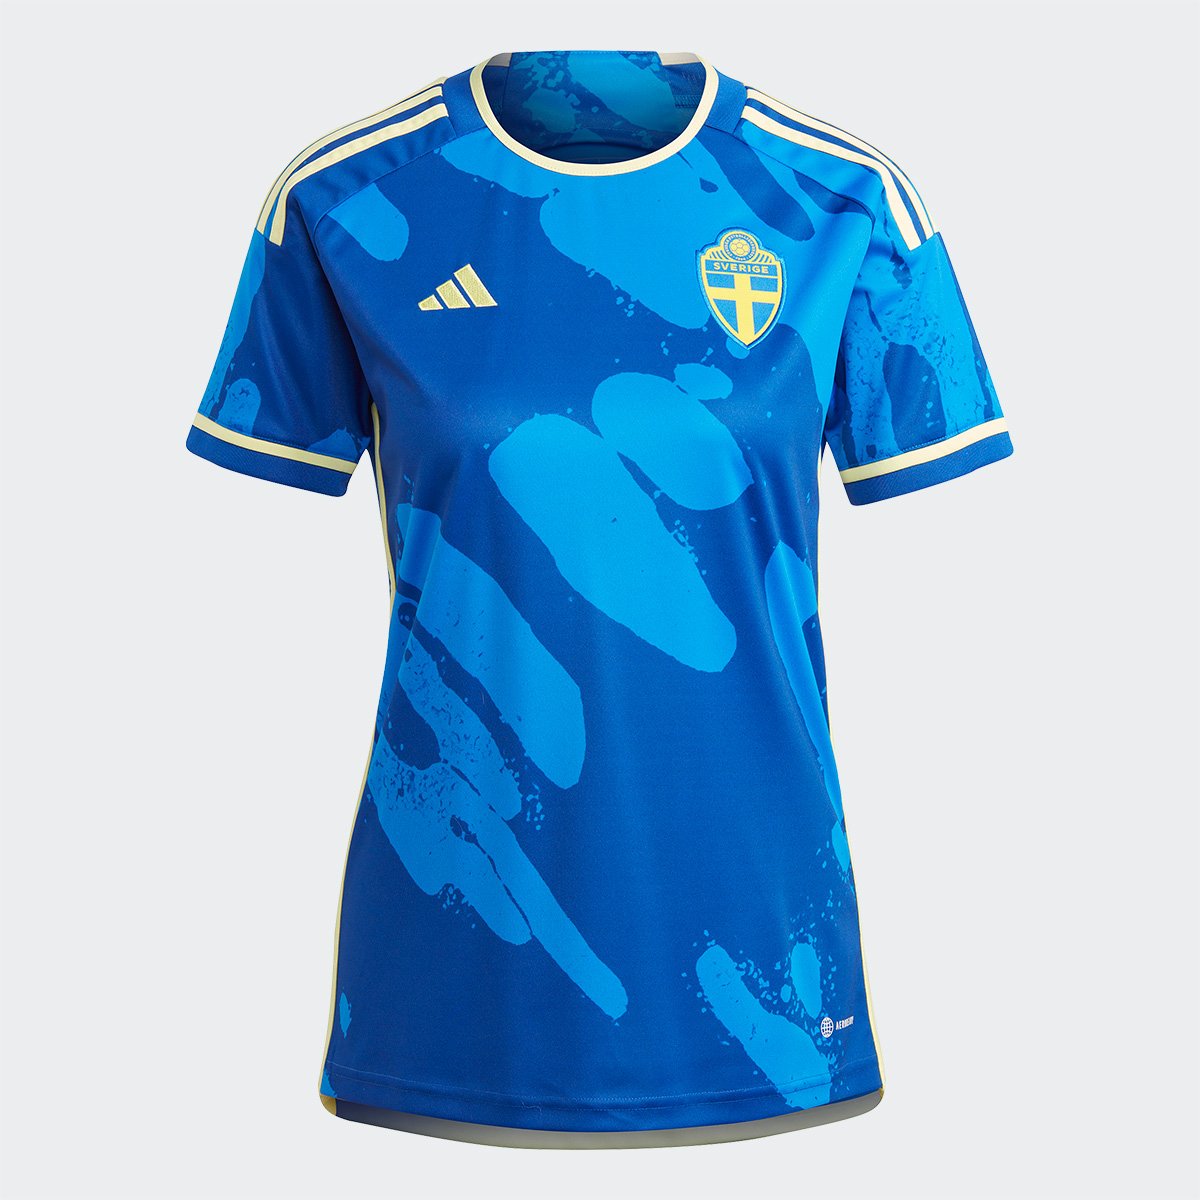 Camisa Seleção Suécia Away 23/24 s/n° Torcedor Adidas Feminina (Tam. P)